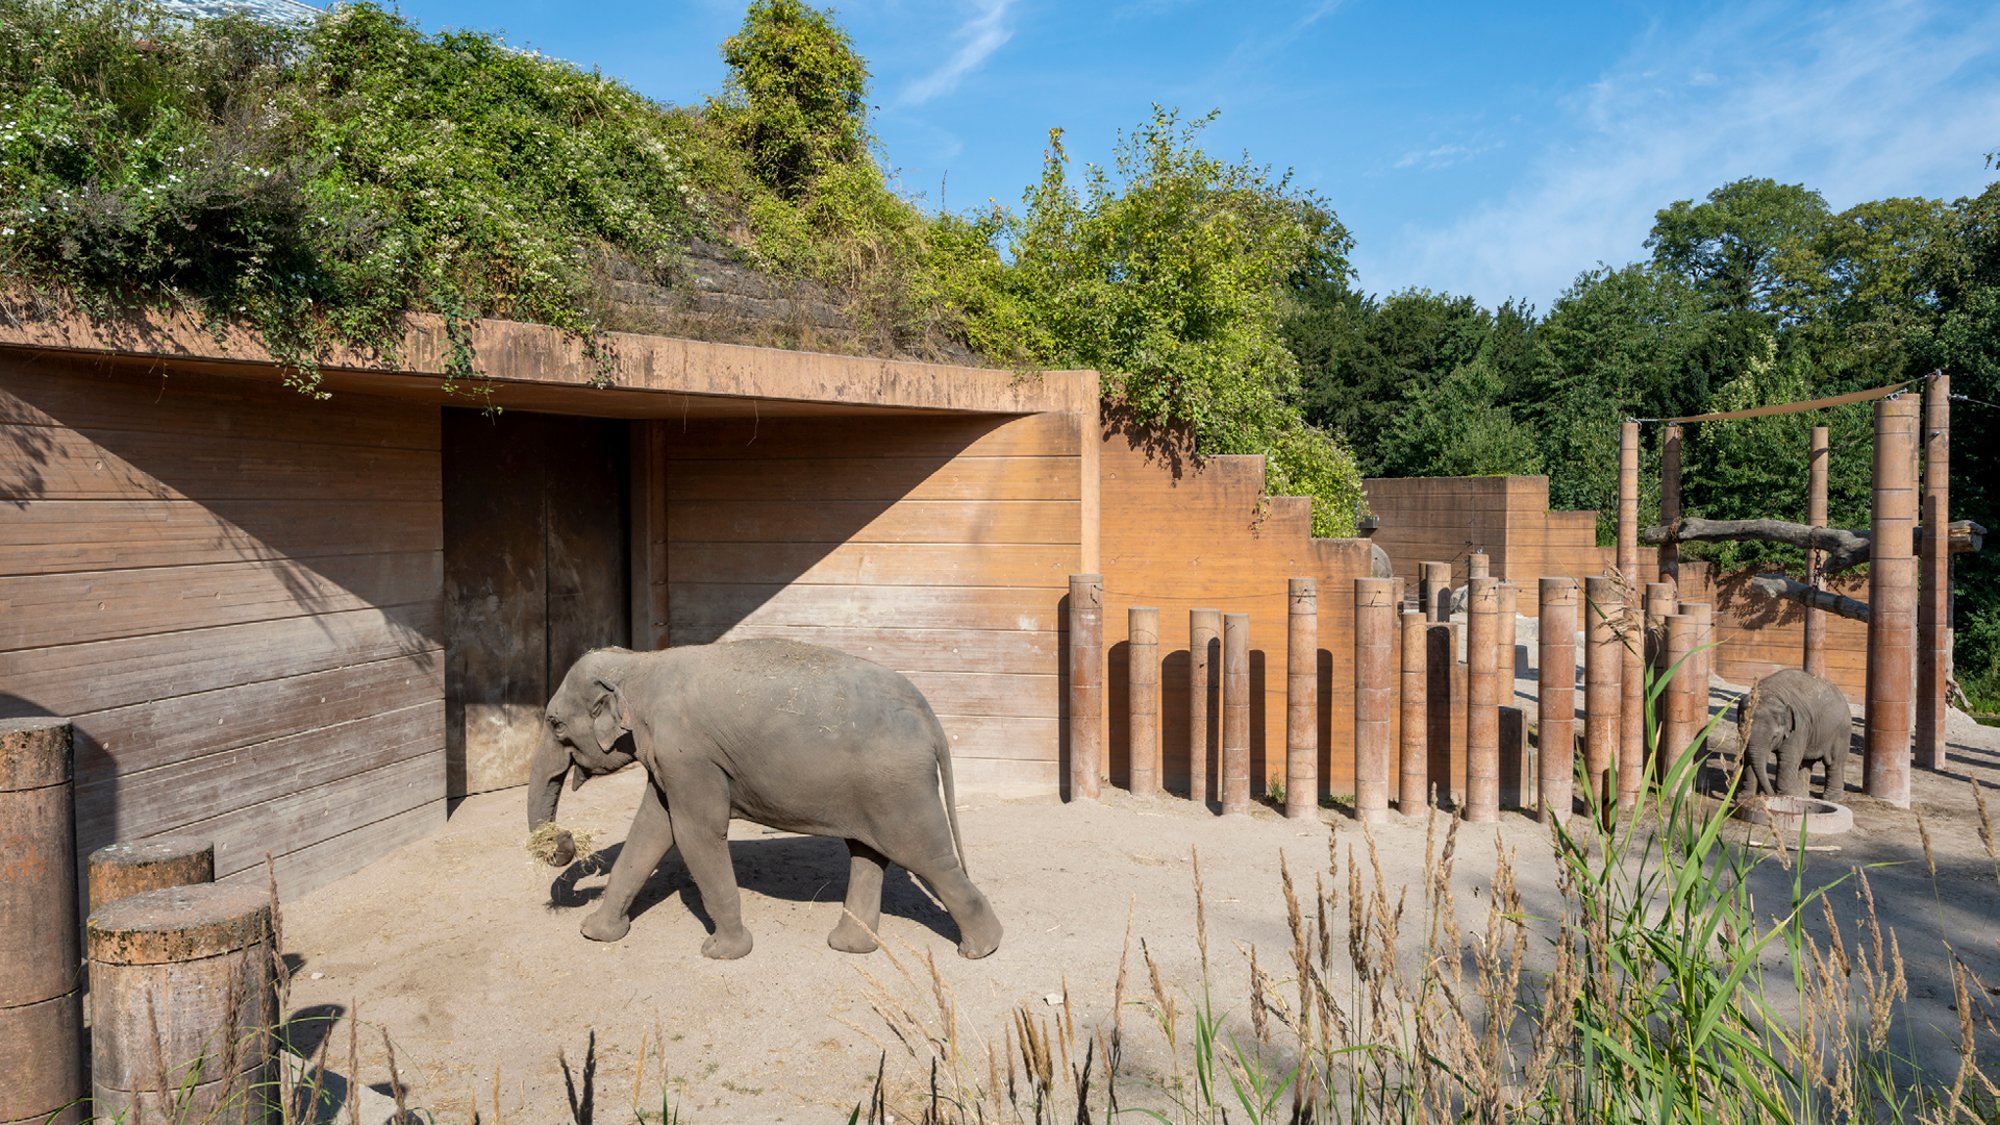 Elephant House, Copenhagen Zoo